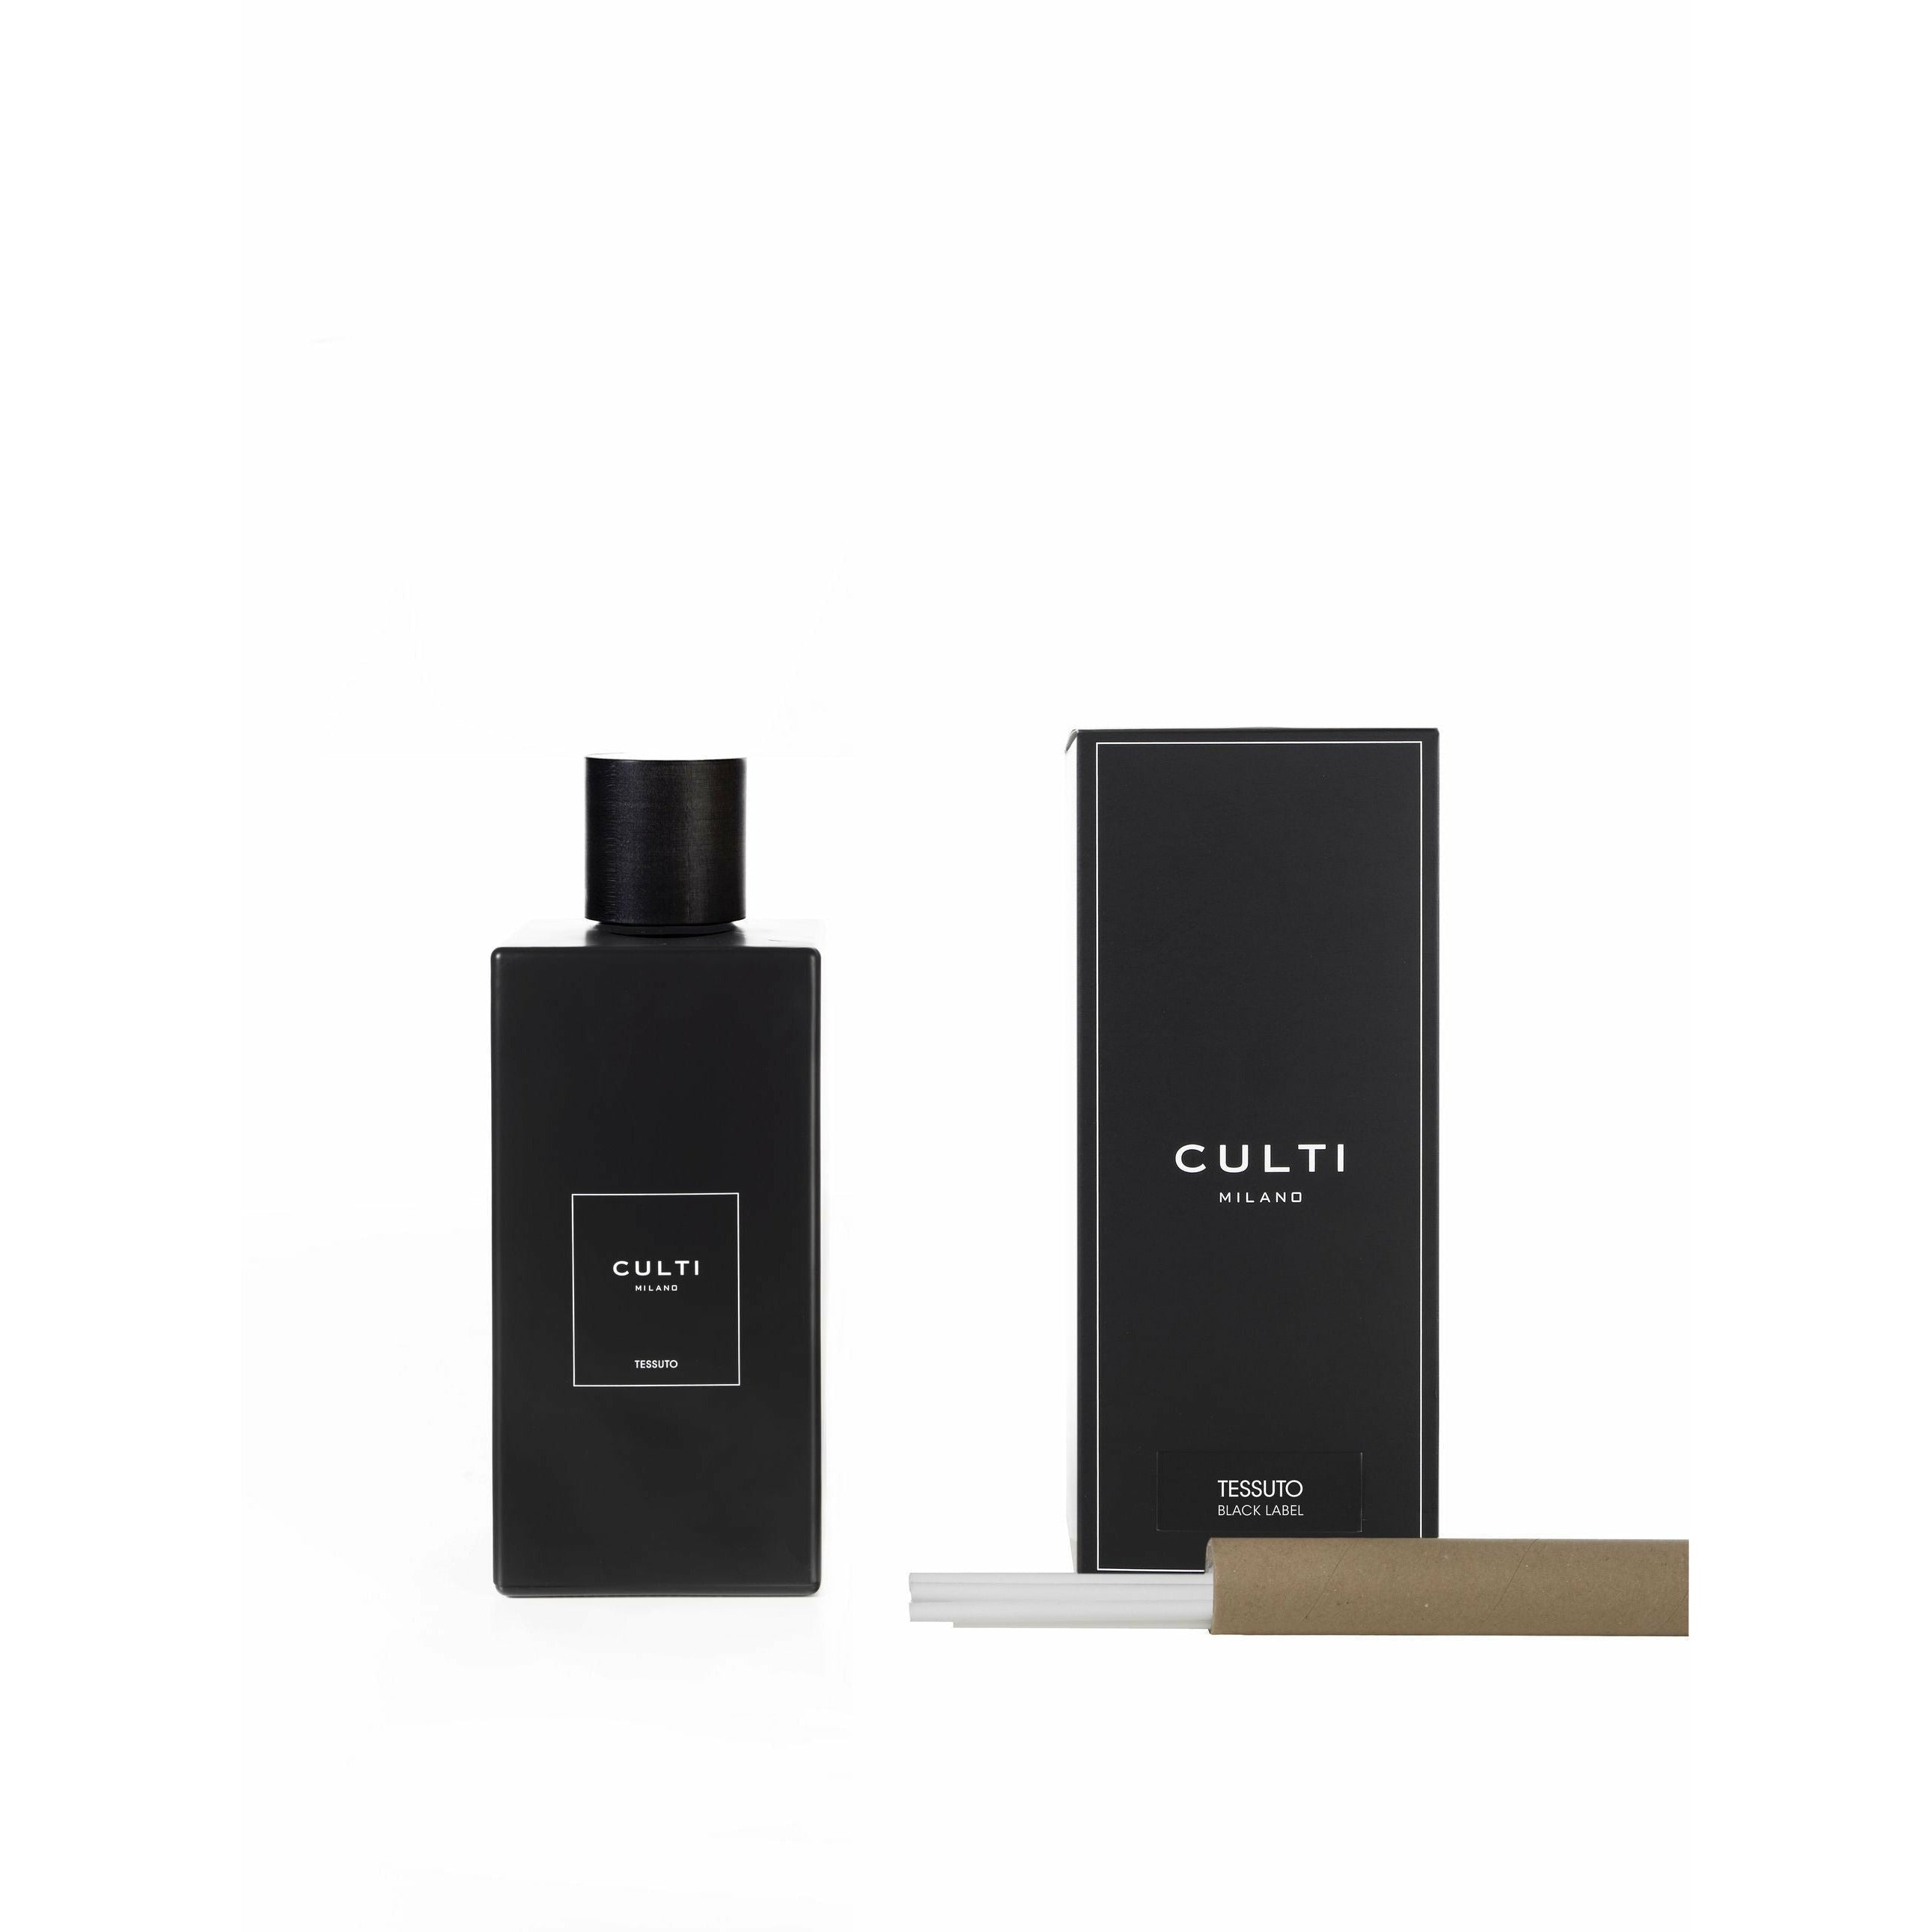 Culti Milano Decor Black Laber Fragrance Diffuser Tessuto, 2,7 L